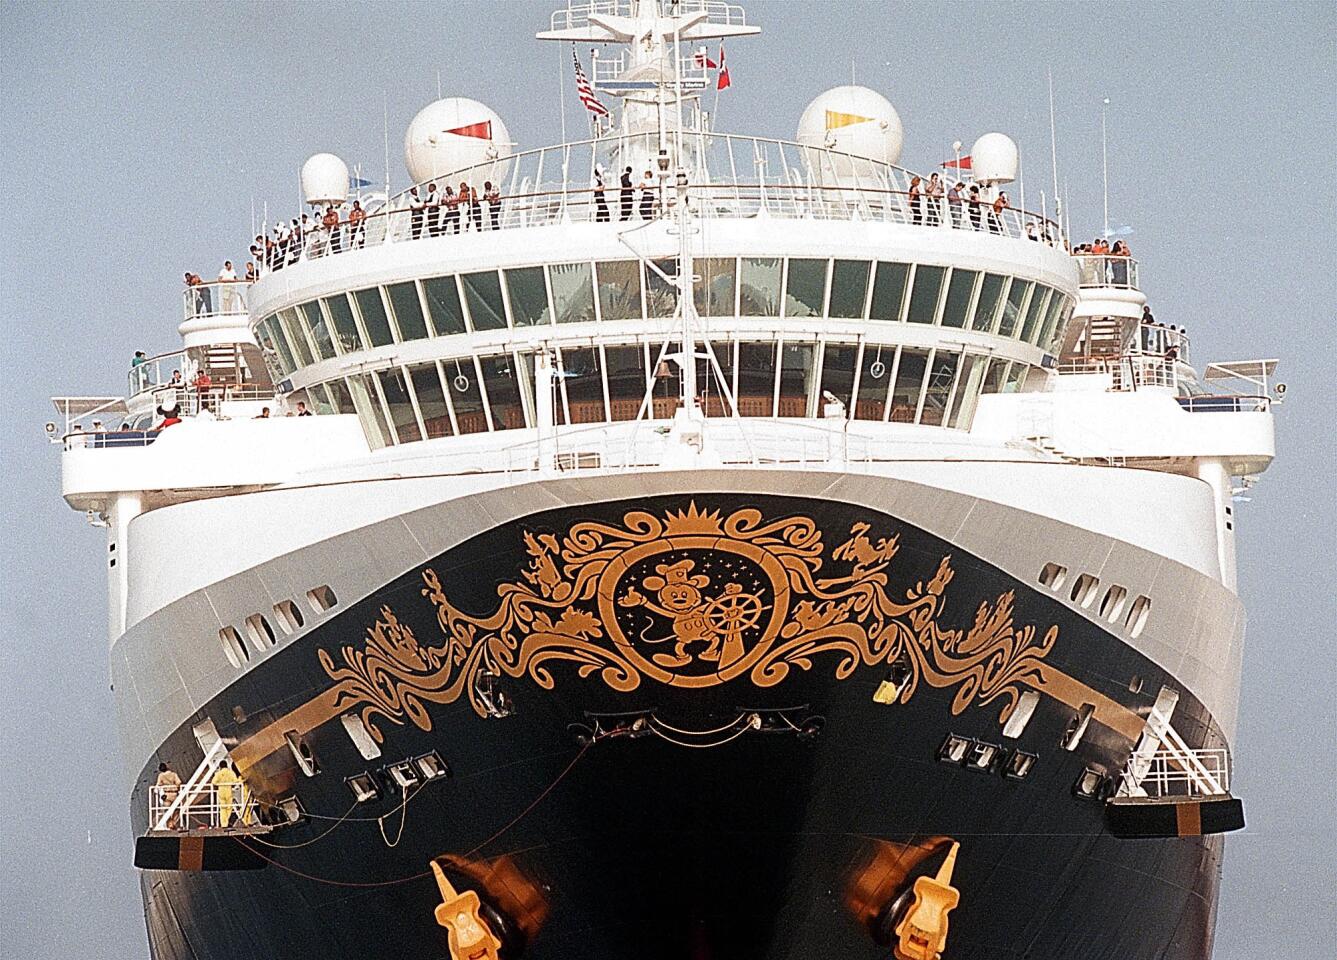 Cruise ship Disney Wonder.